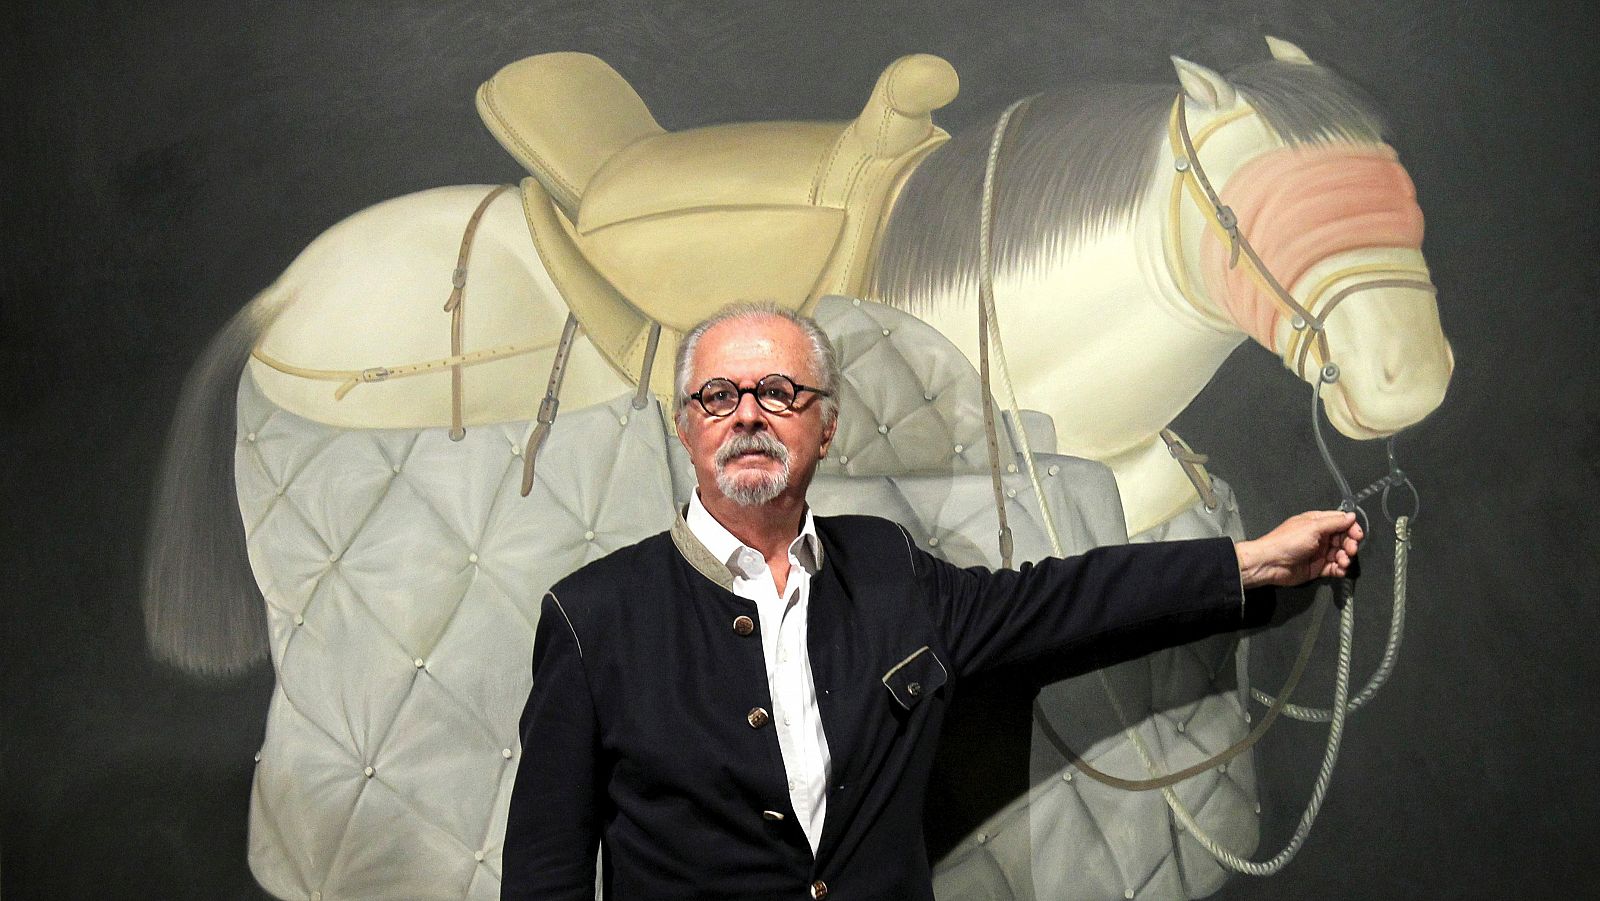 Imagen de 2012 que muestra a Fernando Botero junto a su obra "Caballo de Picador" (1992), en el Museo de Bellas Artes de Bilbao.